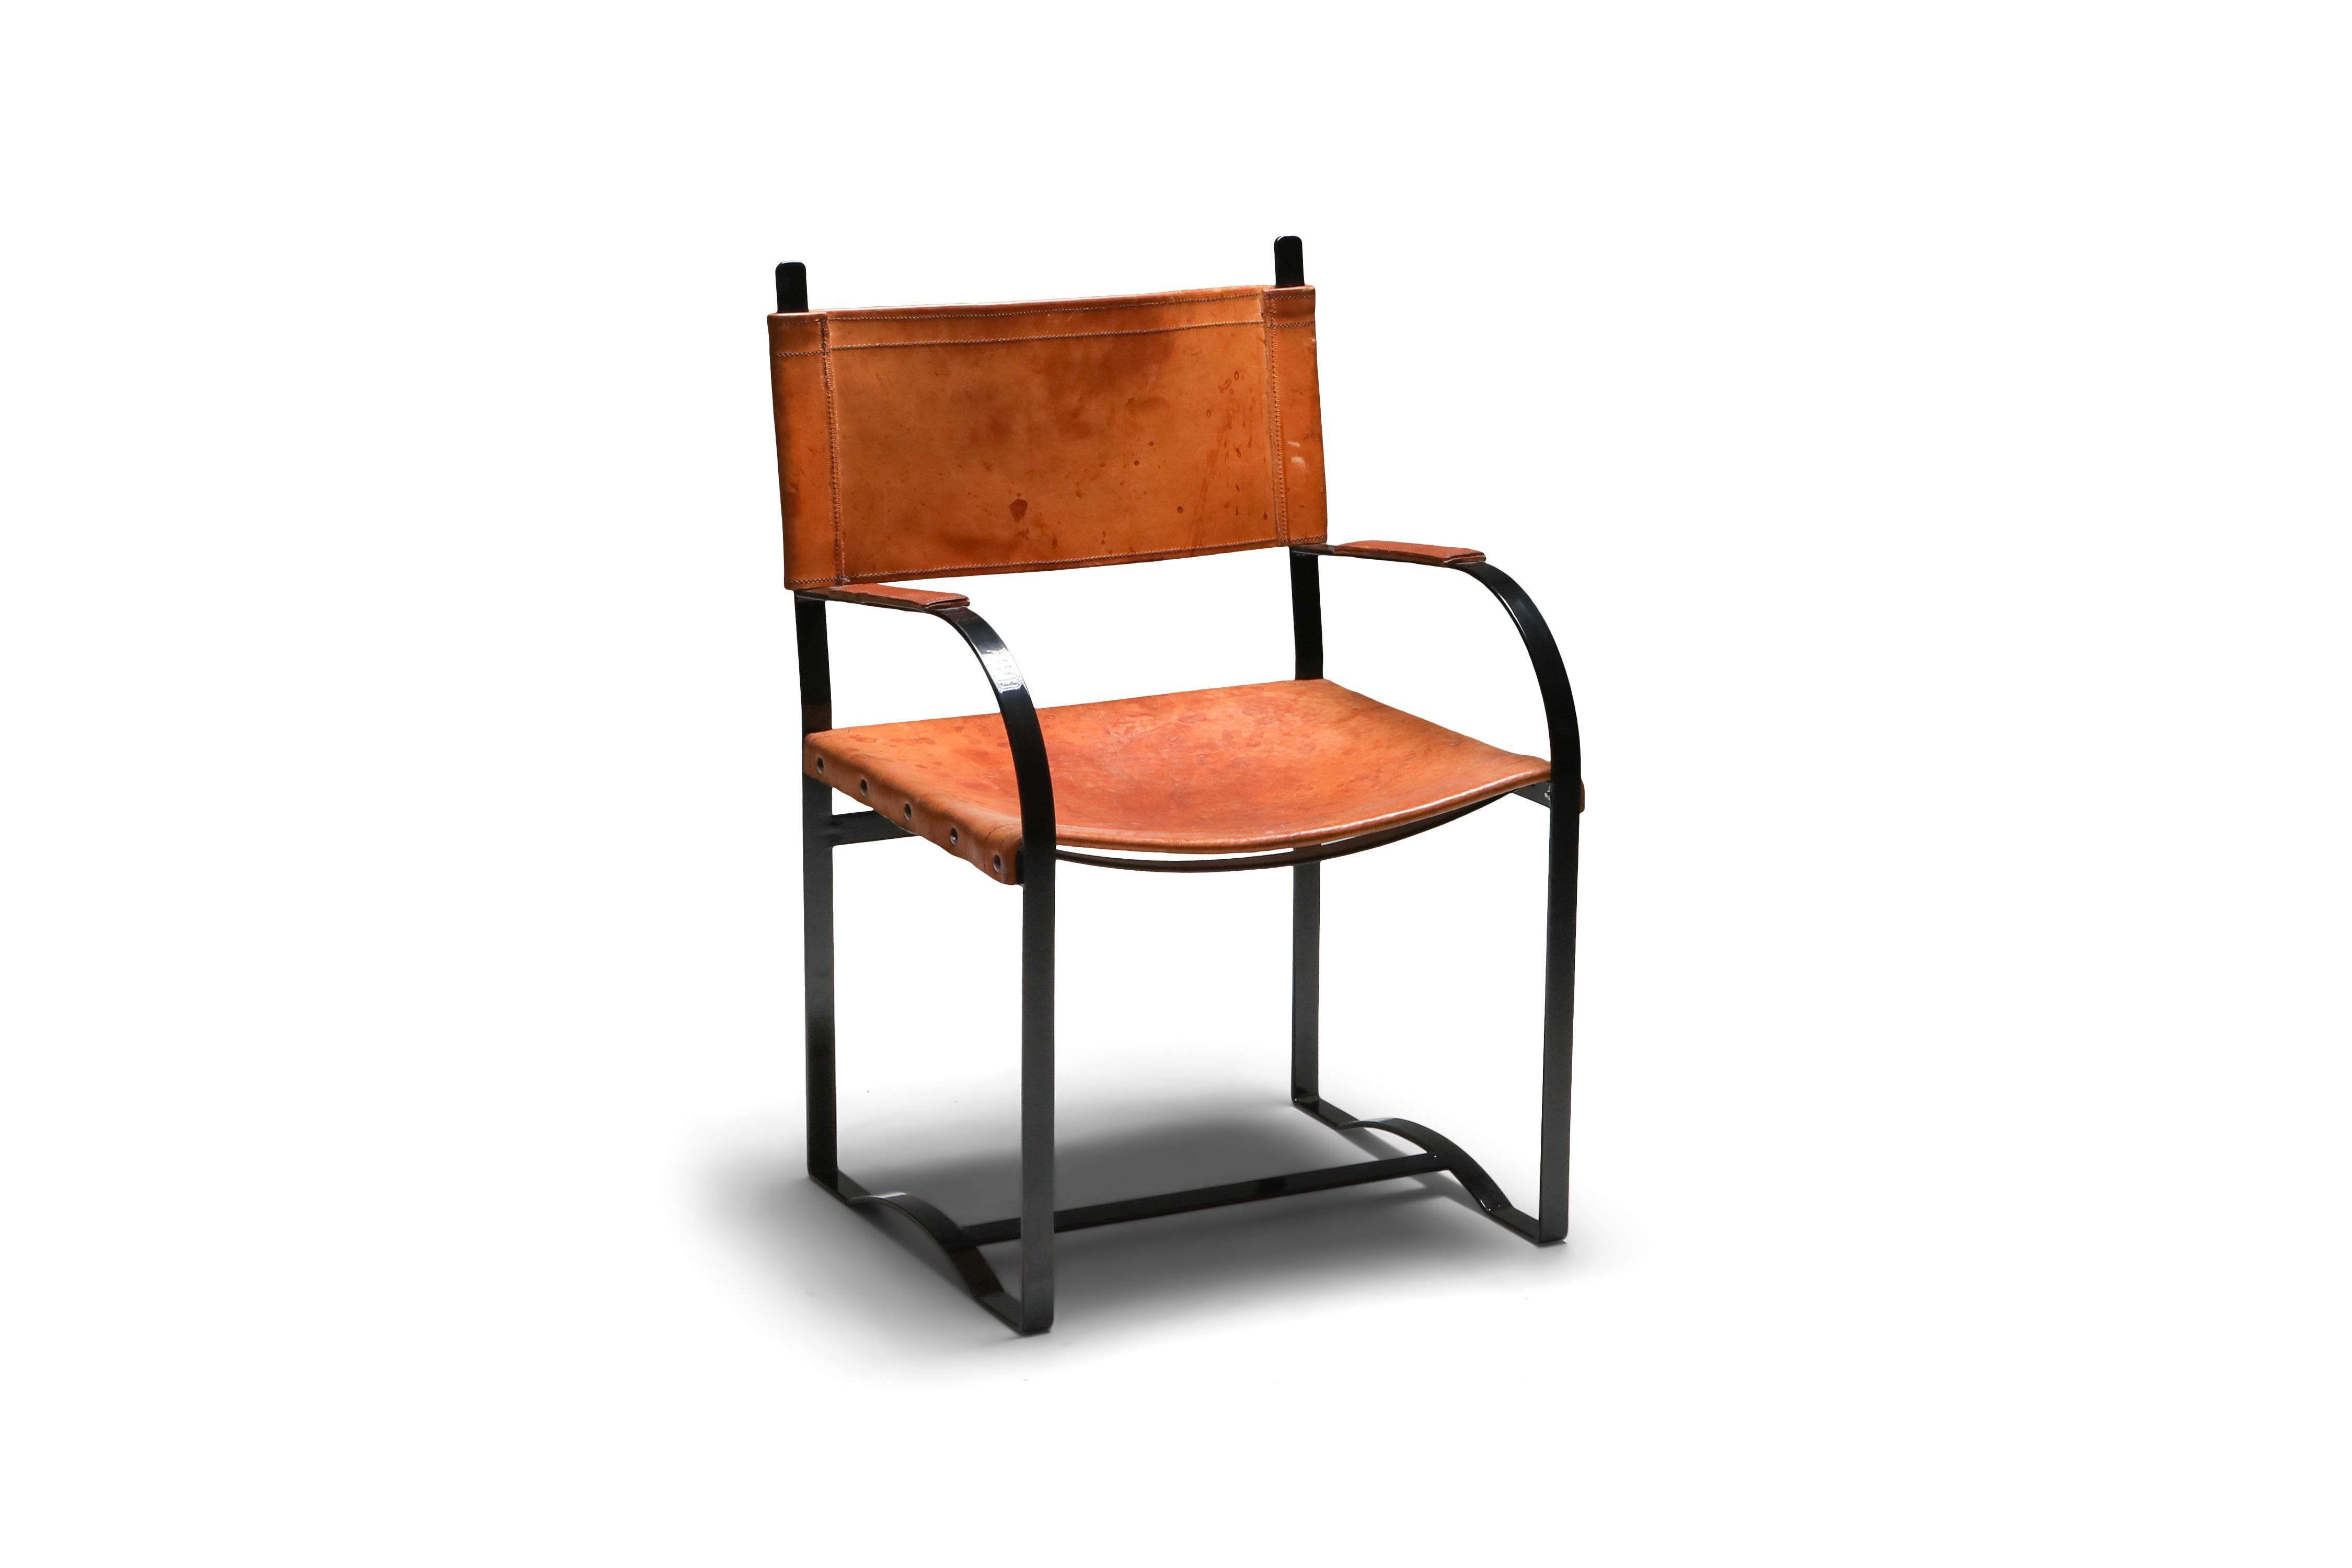 chaises en acier laqué noir et cuir cognac patiné, ensemble de six, Belgique, années 1960

Ensemble inhabituel de six chaises d'appoint, sièges en cuir épais, structure en acier massif.
Ils s'intègrent parfaitement dans un intérieur rustique et